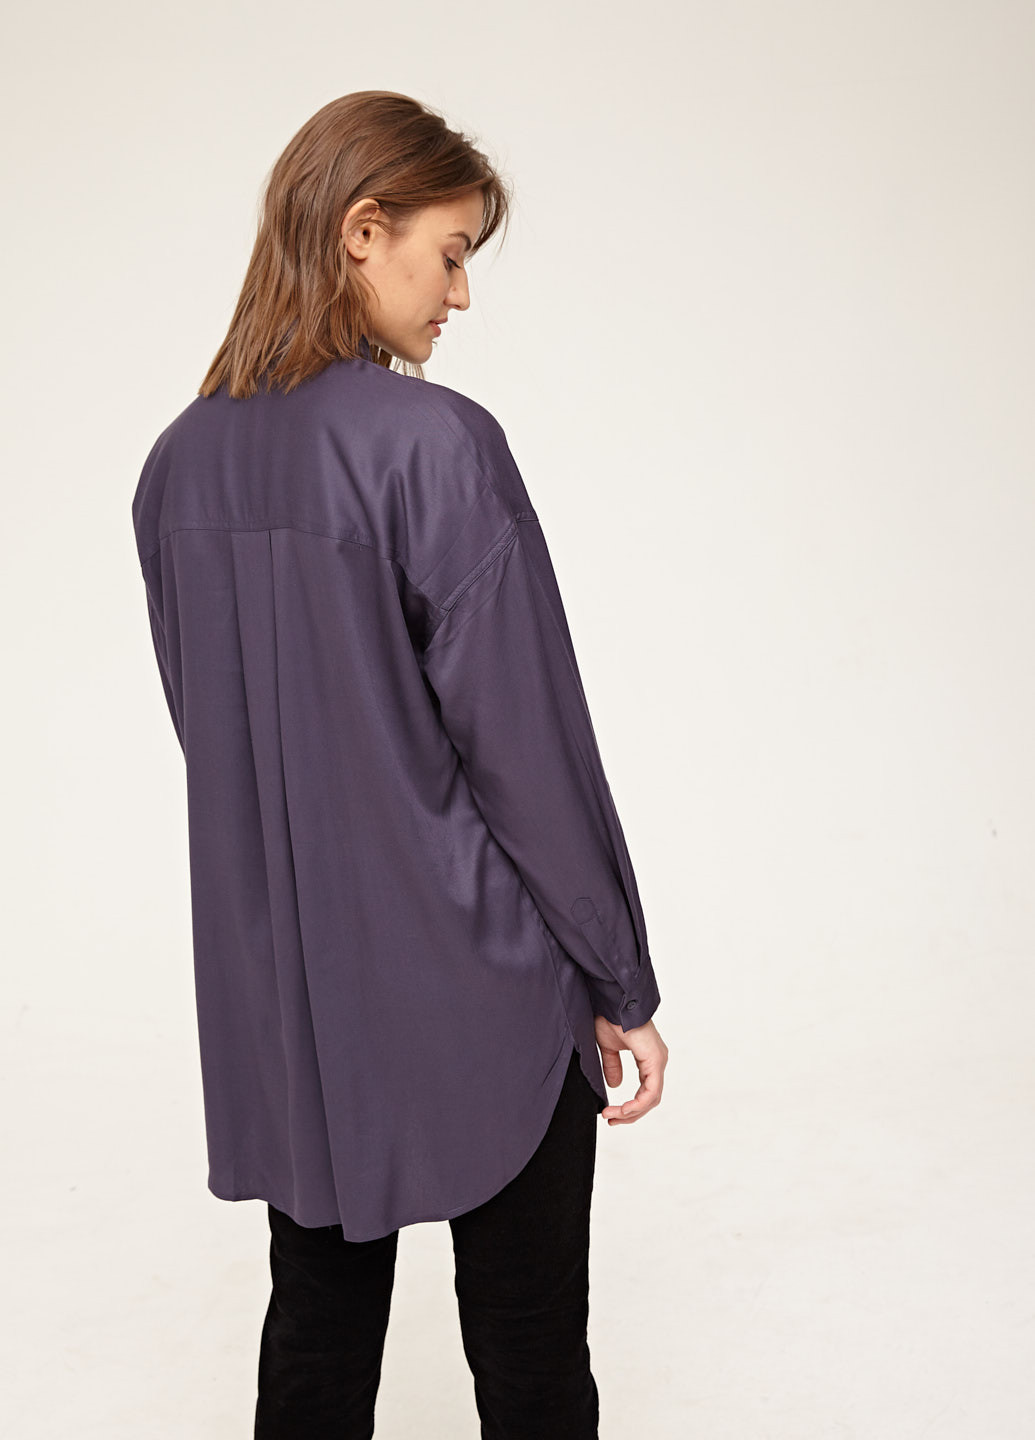 Фиолетовая демисезонная блузка SELA